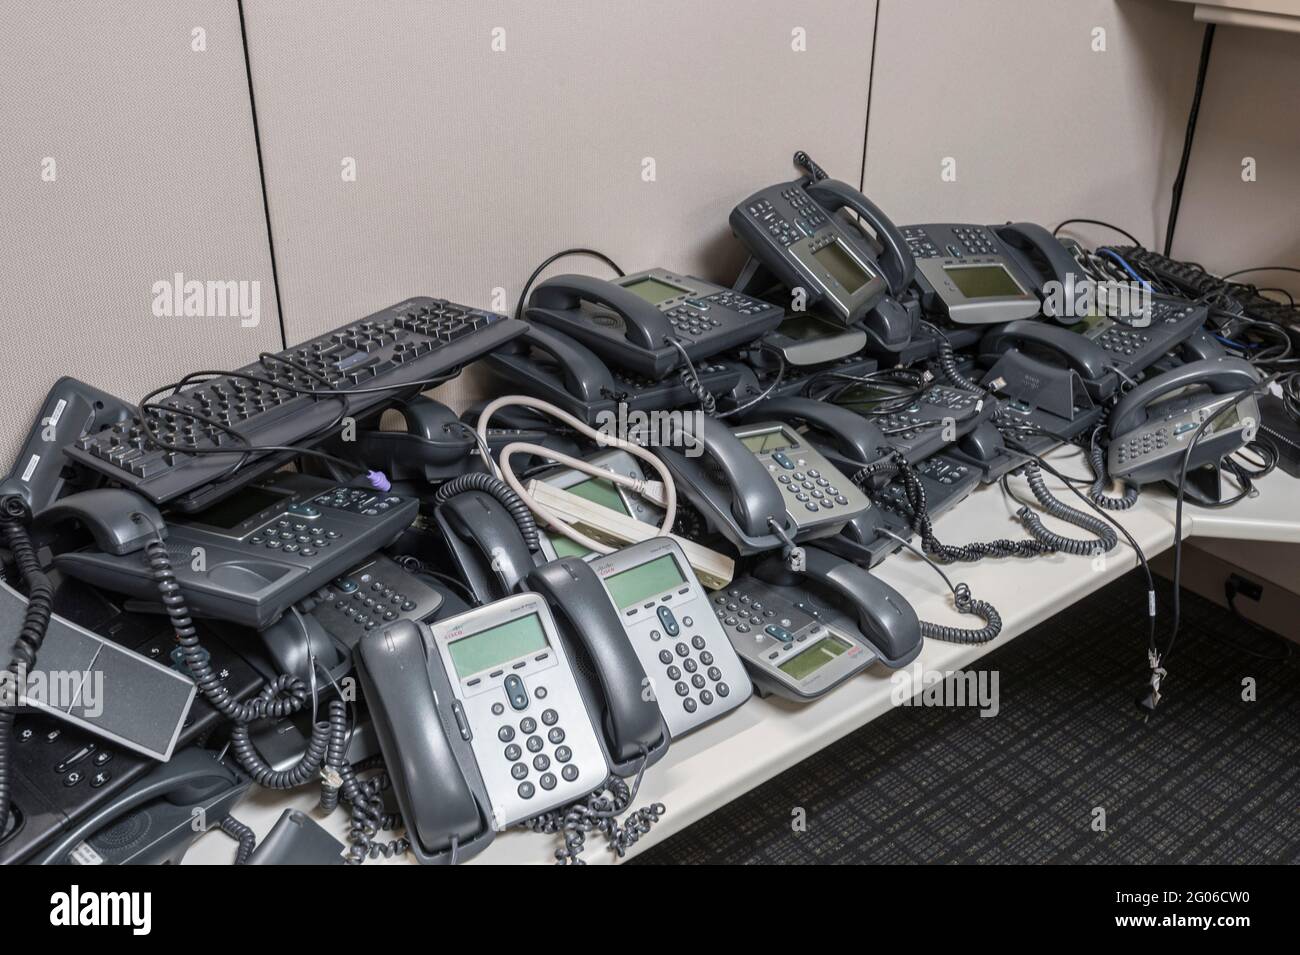 Hay montones de teléfonos de oficina anticuados Foto de stock